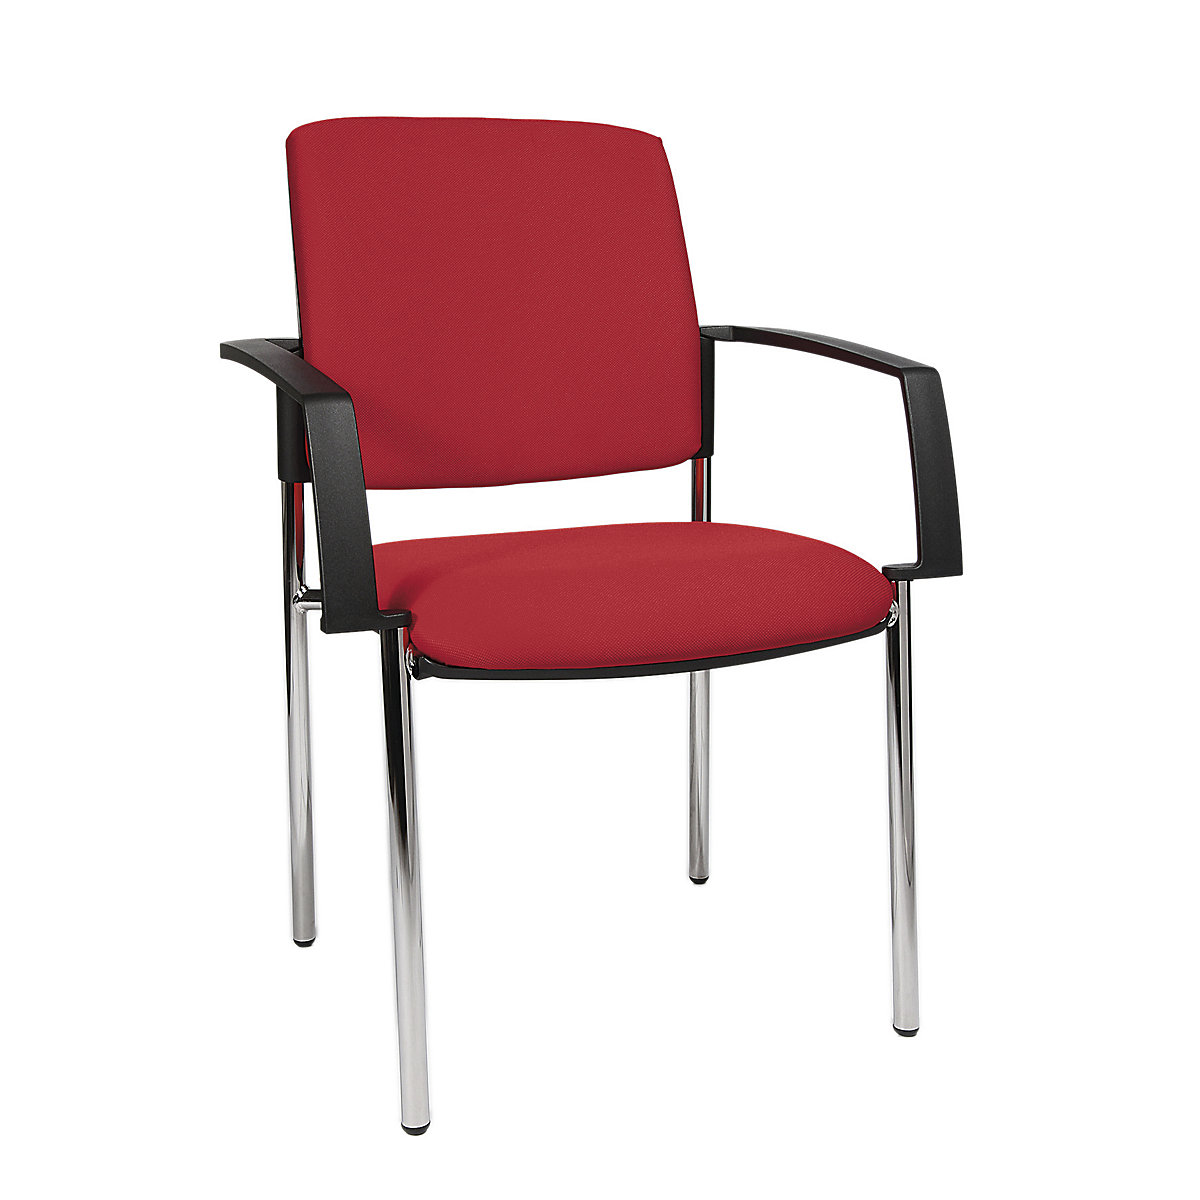 Čalúnená stohovacia stolička – Topstar, podstavec so štyrmi nohami, OJ 2 ks, podstavec pochrómovaný, čalúnenie červená-1